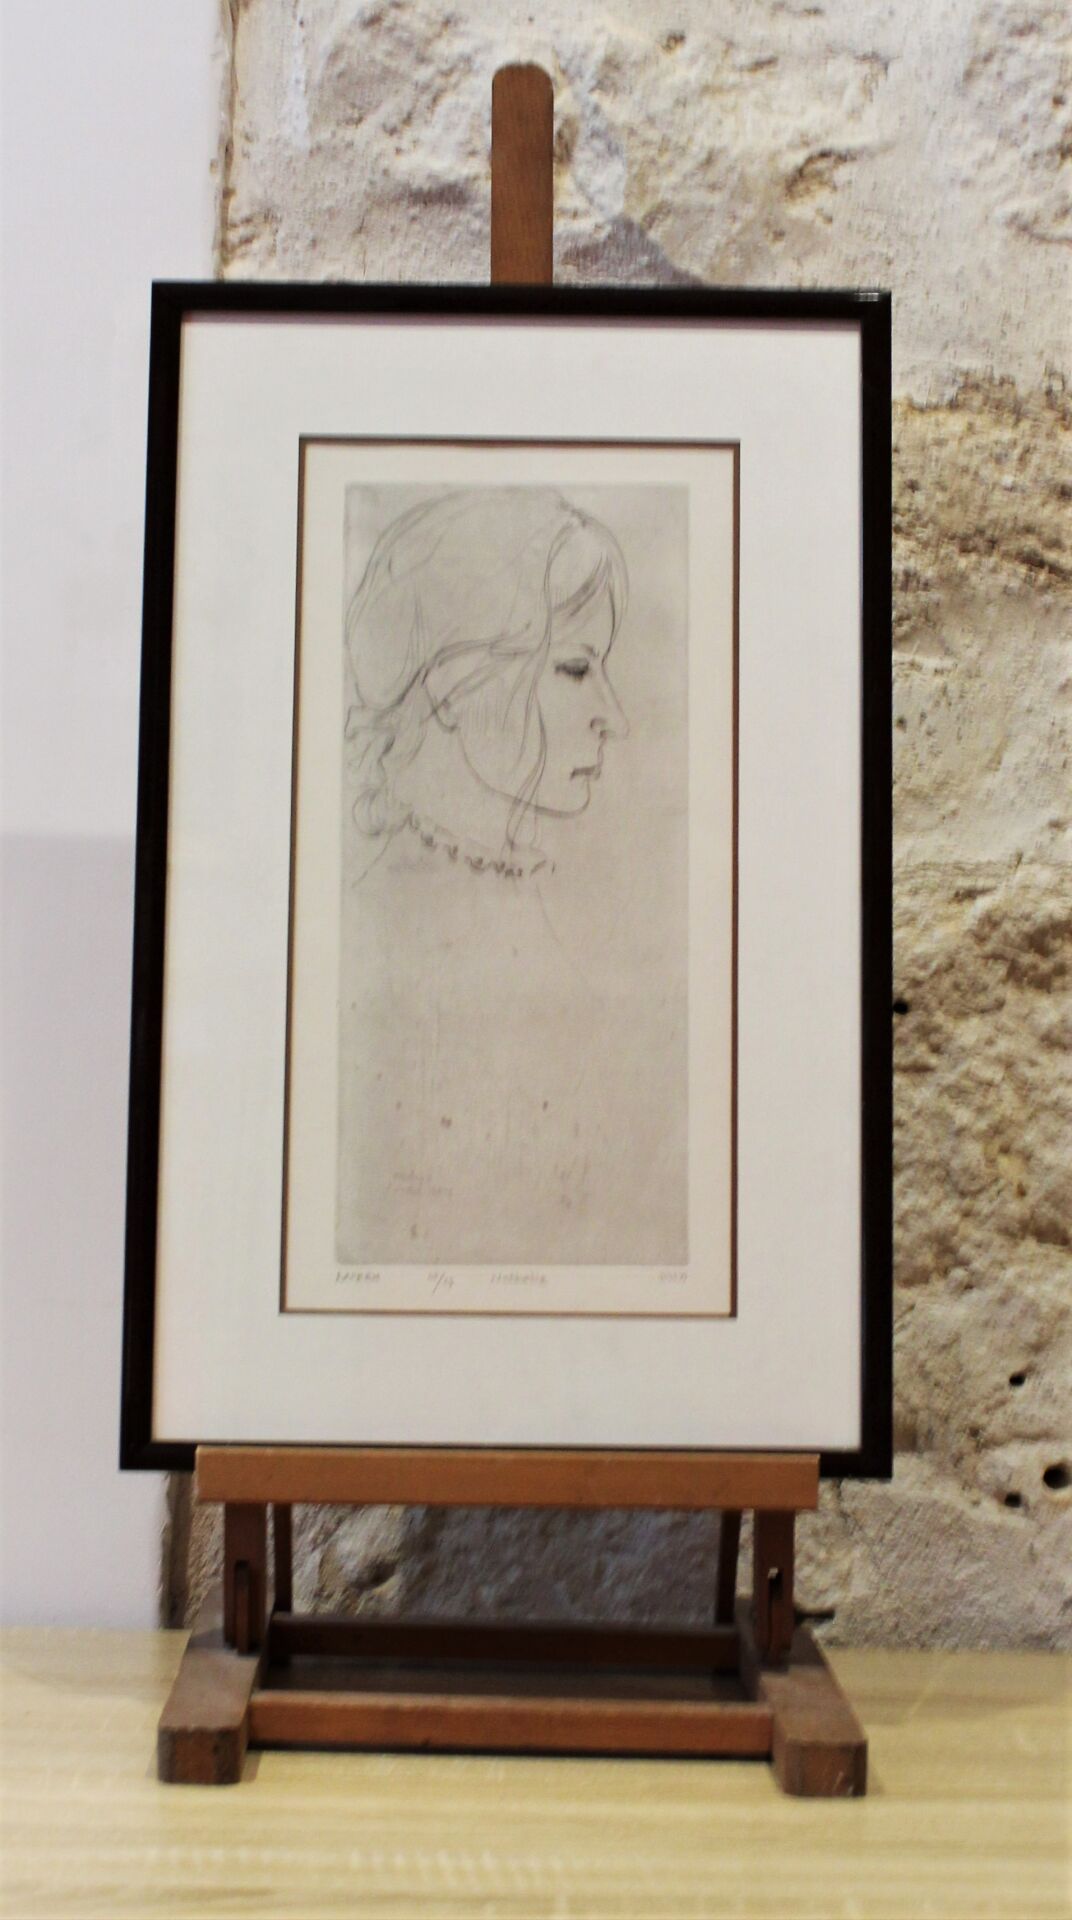 Null MOREH "Nathalie" n°25/25

石版画。尺寸：39 x 19,5 cm 

附上一张躺着的女人的印刷品，瓦托的左下方。